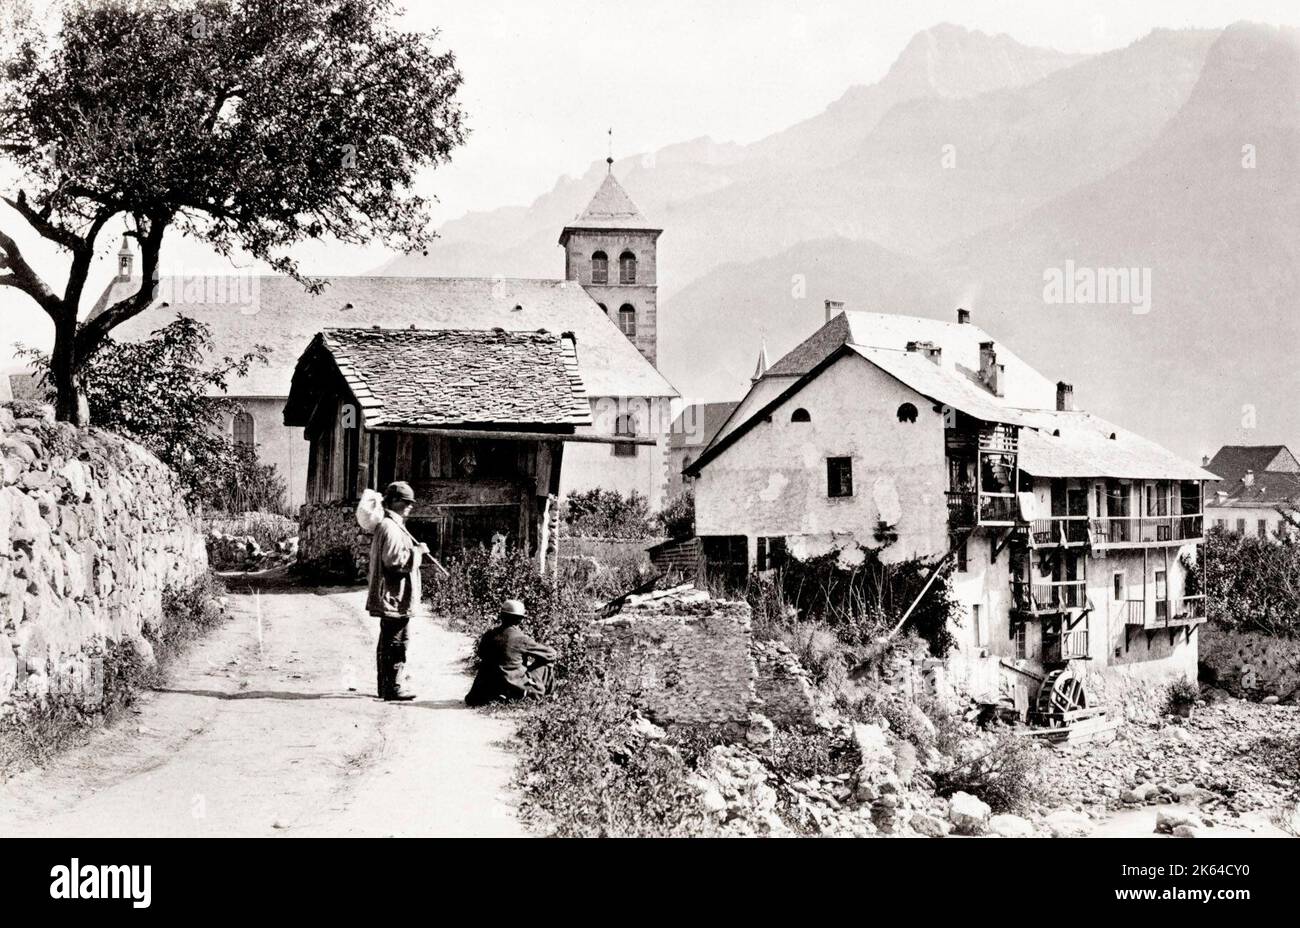 Fotografia d'annata del XIX secolo: Sallanches è un comune nel dipartimento dell'alta Savoia in Francia. Situato vicino al massiccio del Monte Bianco, circa 1880. Foto Stock